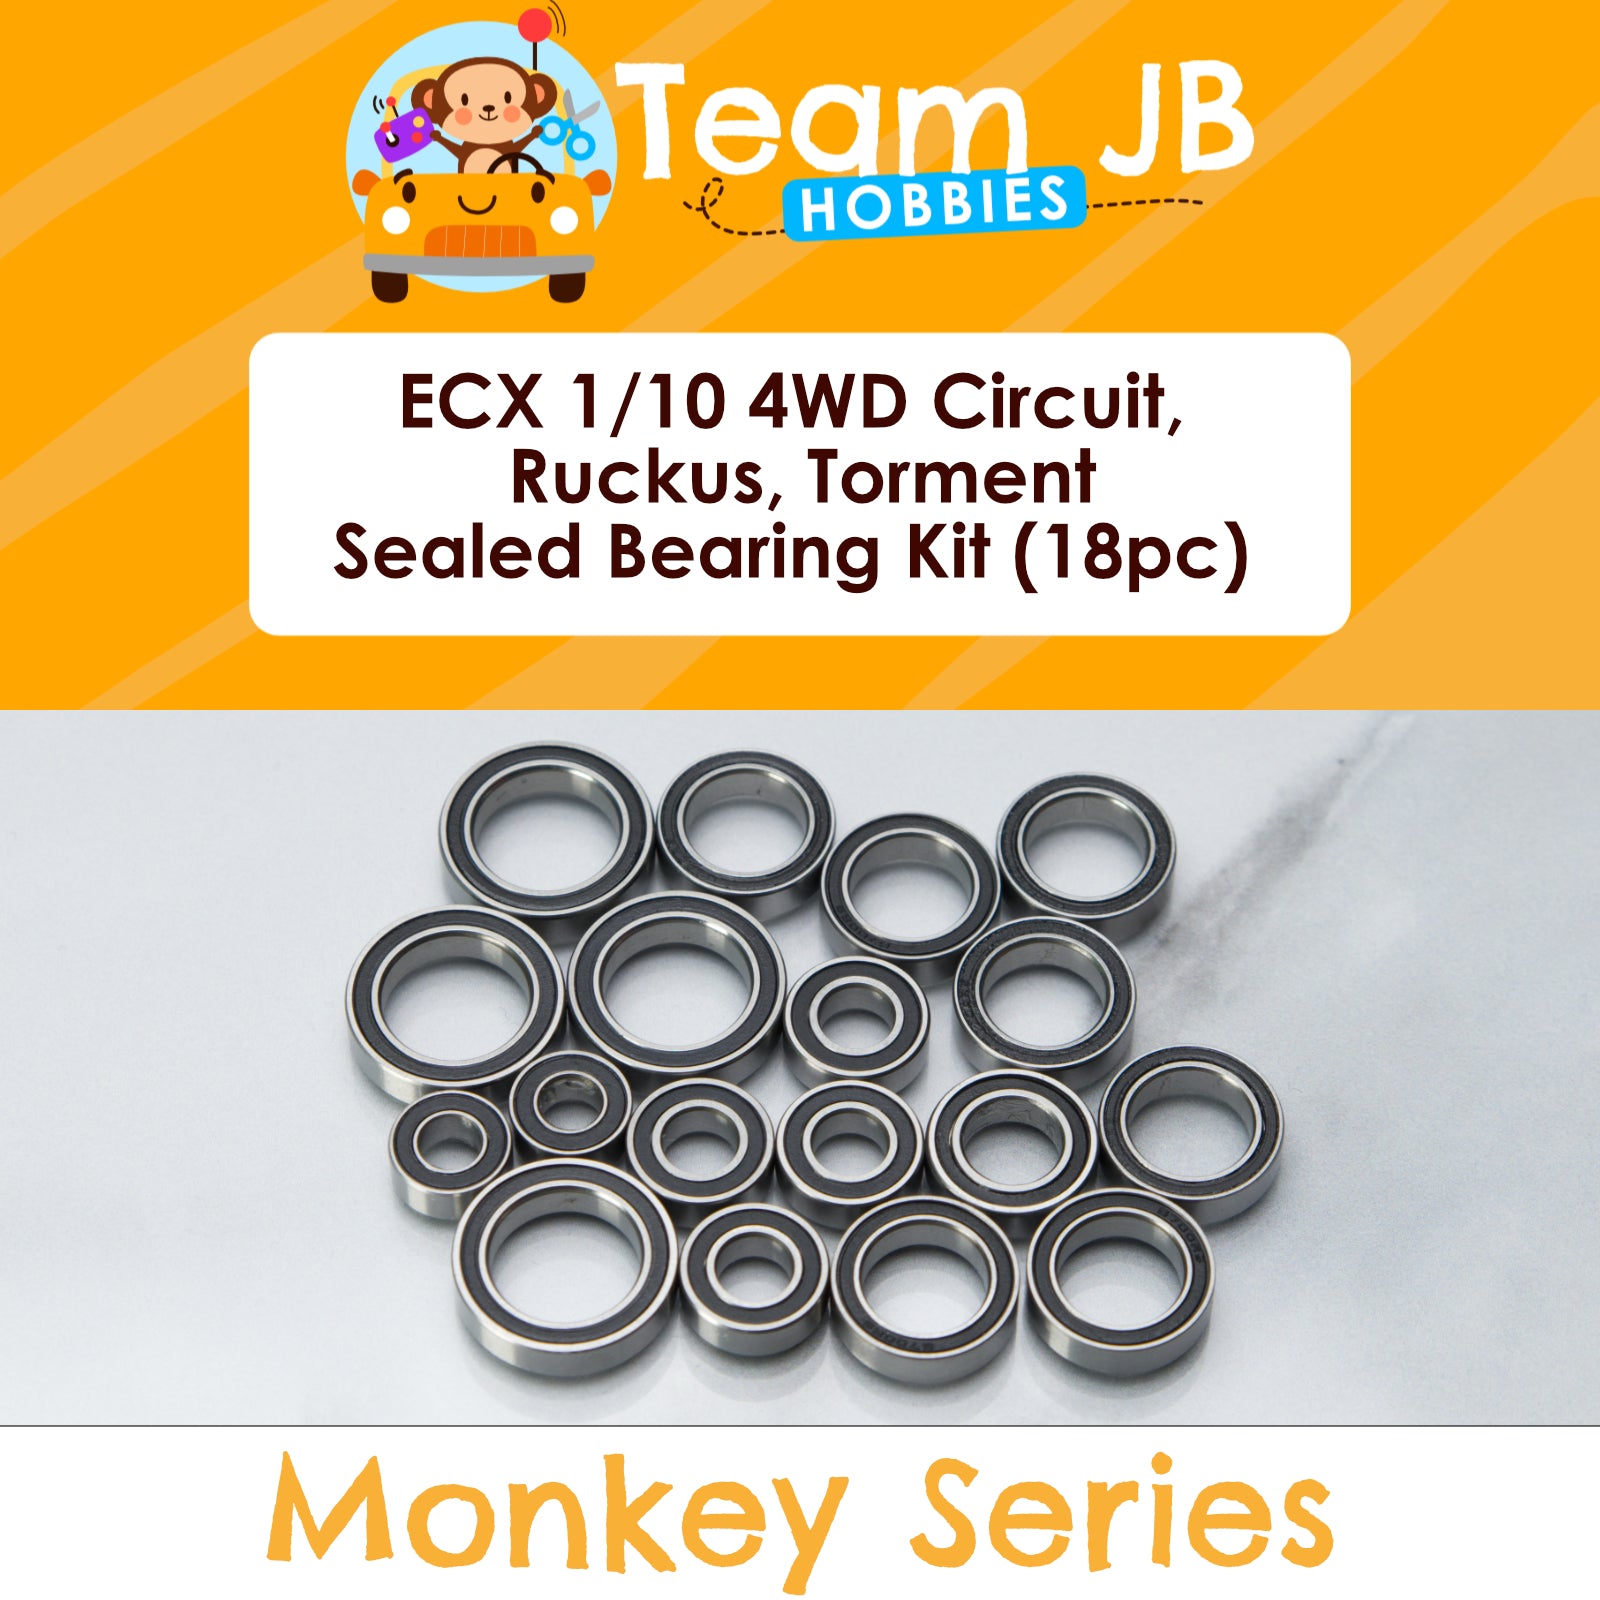 ECX 1/10 4WD Circuit, Ruckus, Torment - Sealed Bearing Kit